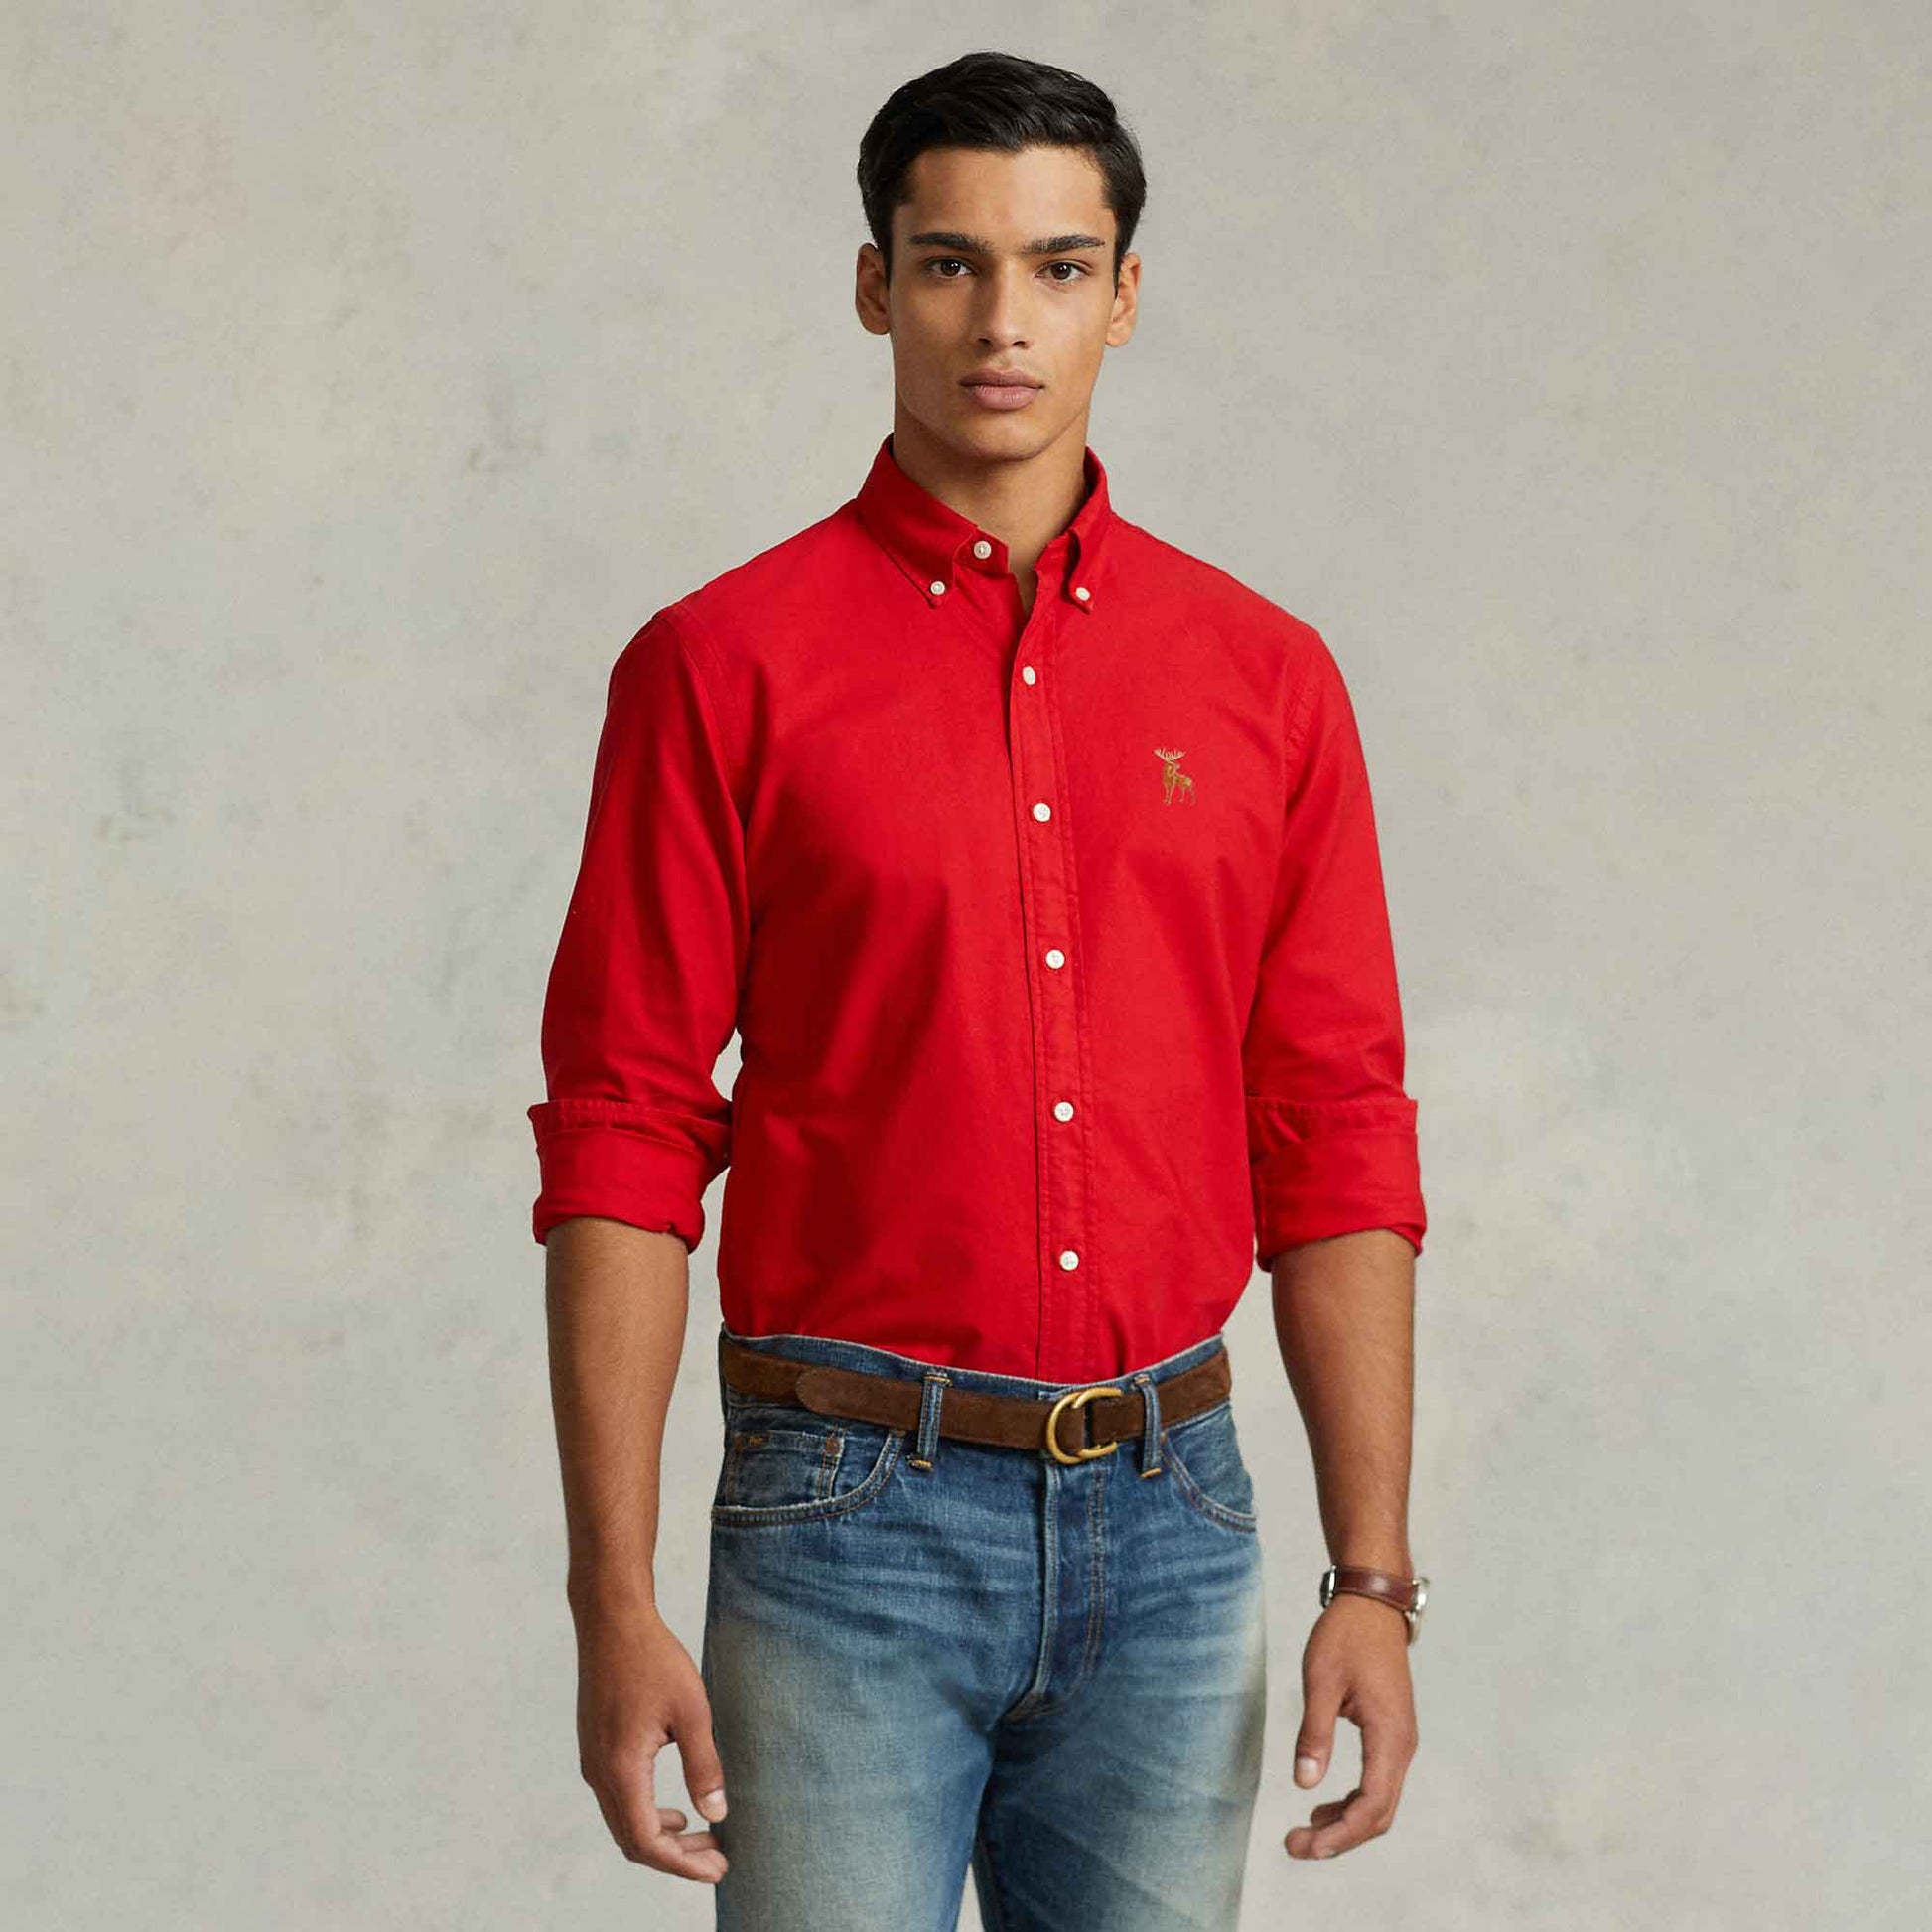 Polo Republica Men's Moose Embroidered Premium Casual Shirt Men's Casual Shirt Polo Republica Red S 